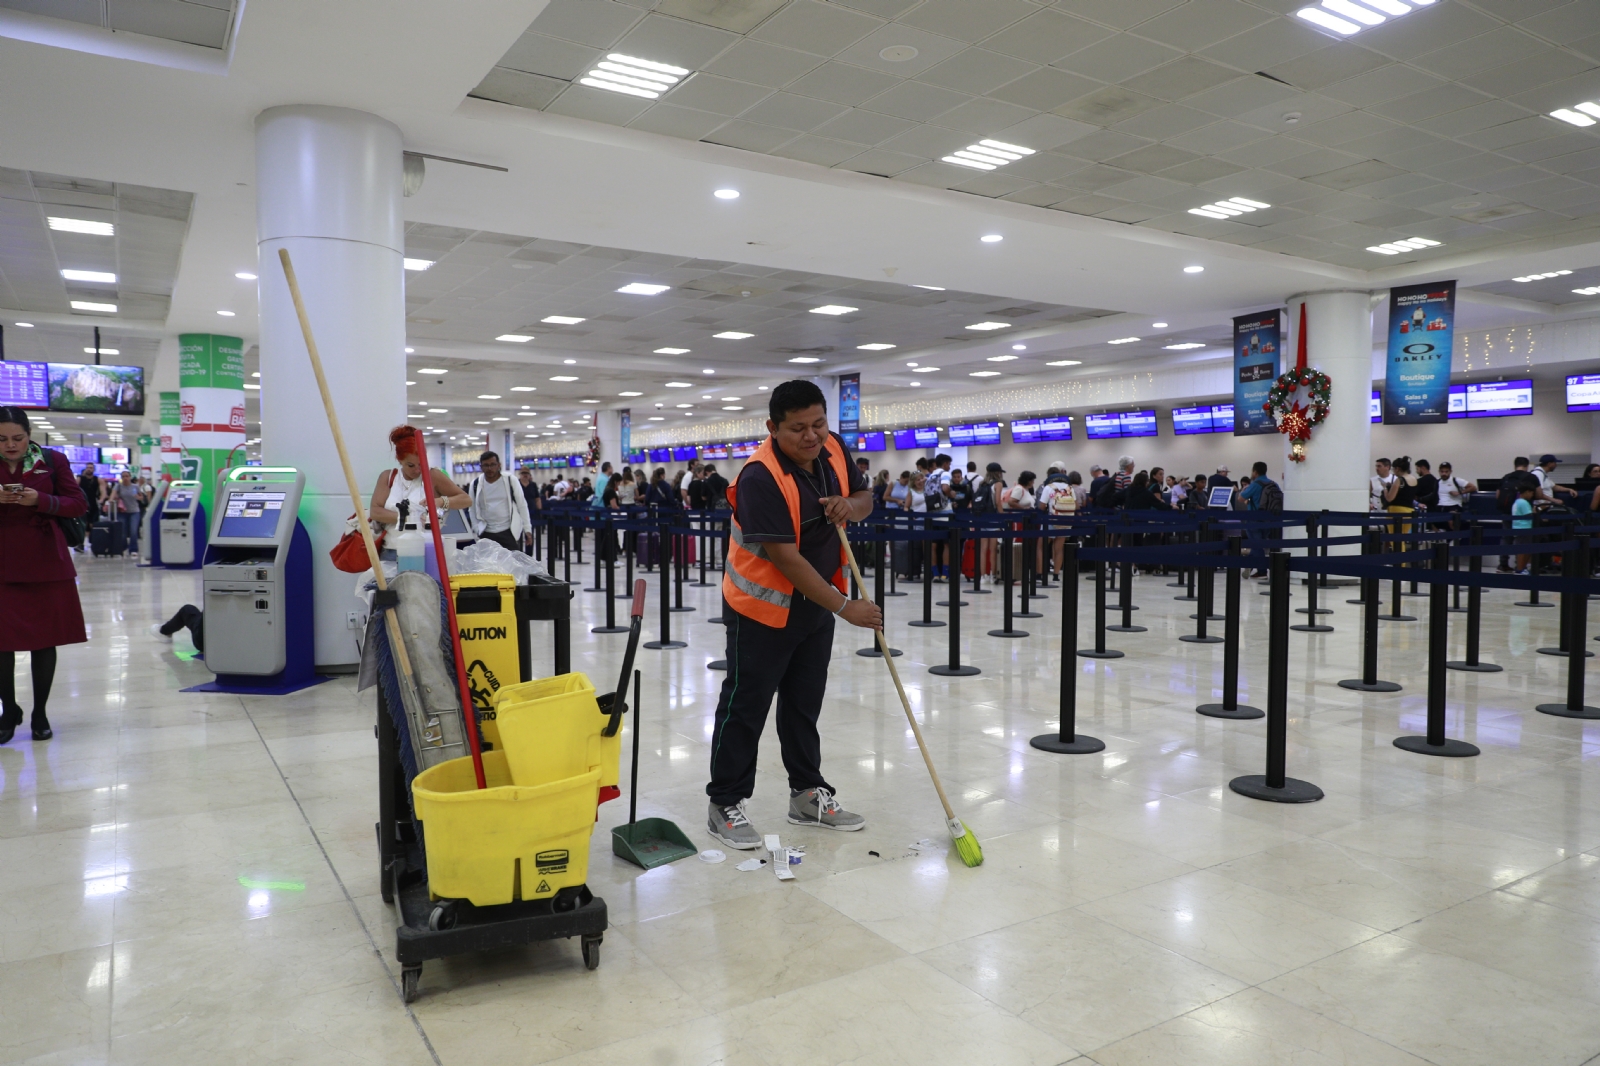 Juan Enrique, el trabajador invisible que mantiene limpio el aeropuerto de Cancún